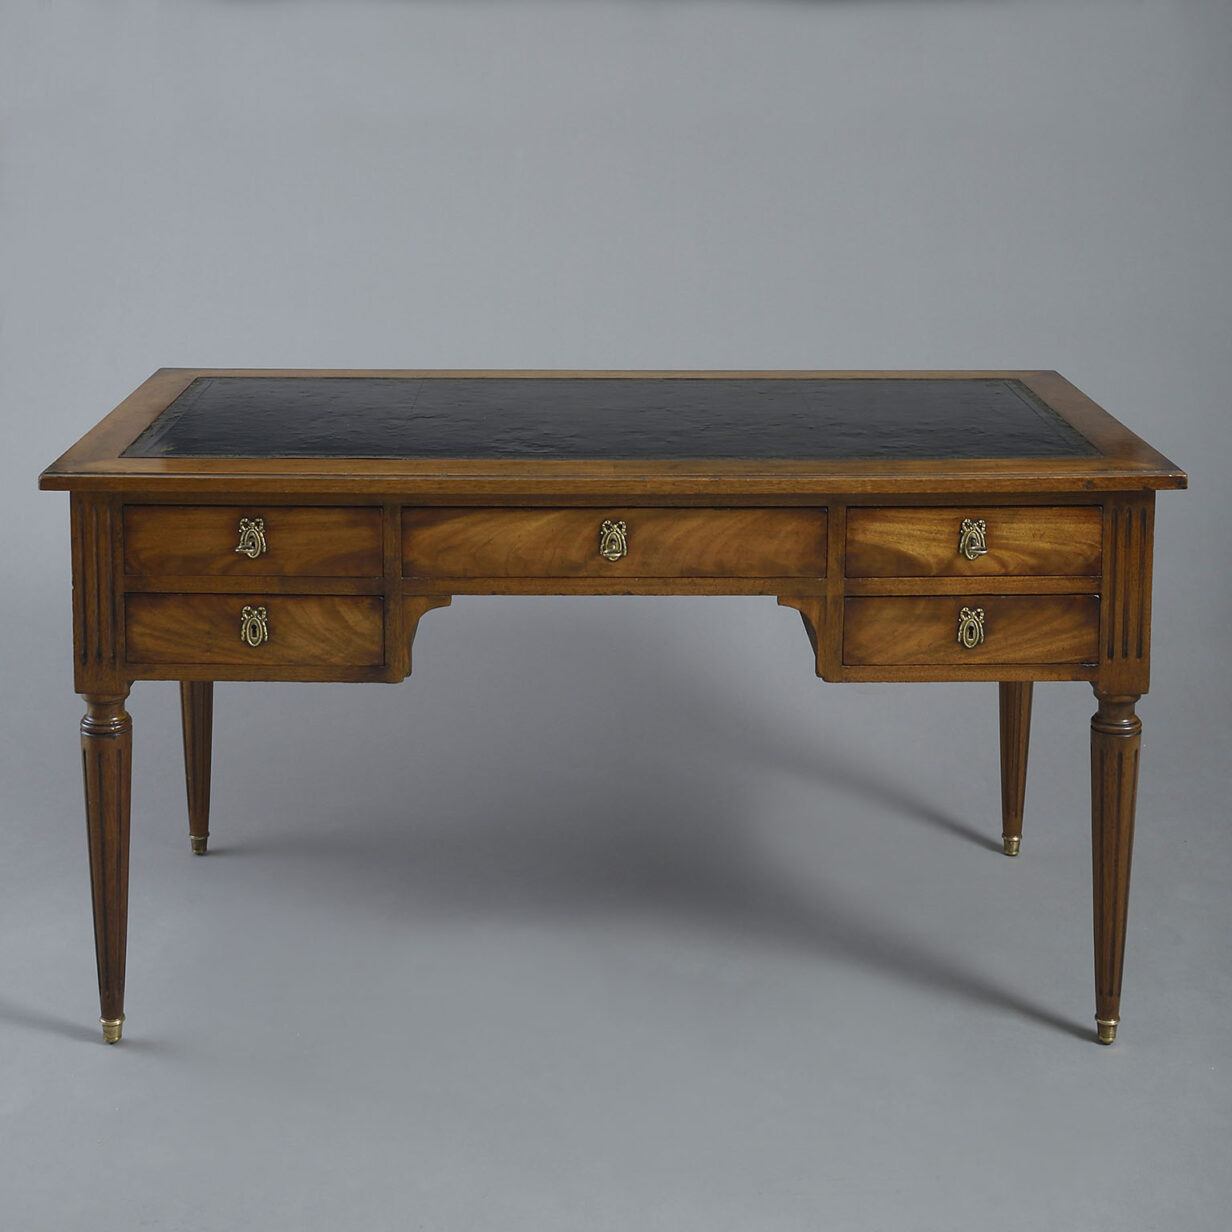 Late 19th century mahogany bureau plat